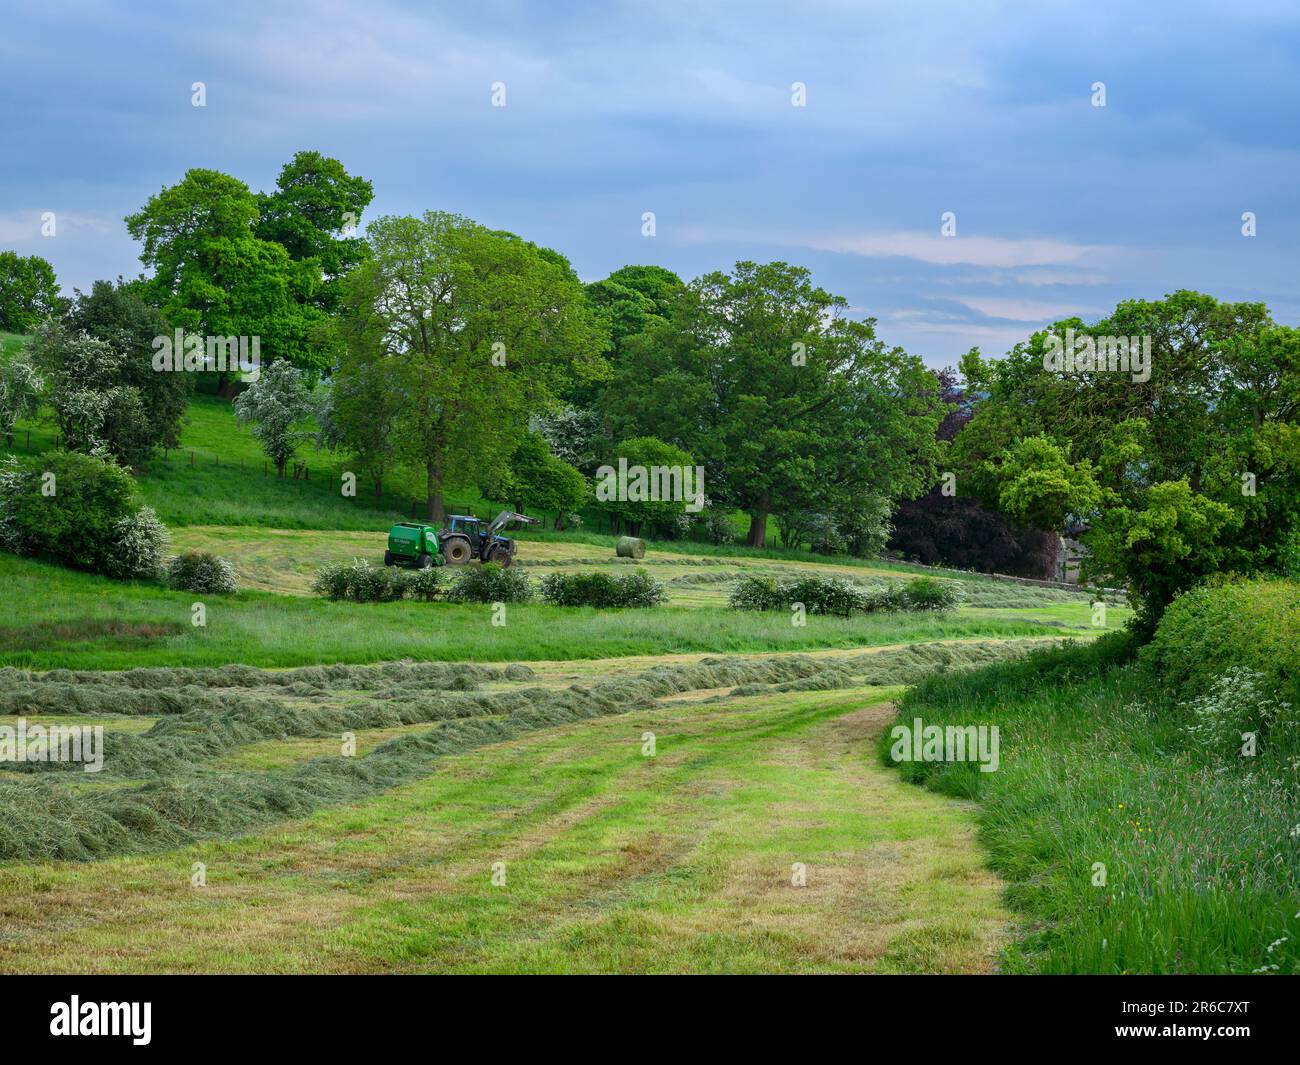 Fabrication de foin (tracteur Valmet en cours de conduite dans le champ tirant la presse McHale F5400, collecte de l'herbe sèche, 1 une balle ronde) - Leathley, Yorkshire, Angleterre, Royaume-Uni. Banque D'Images